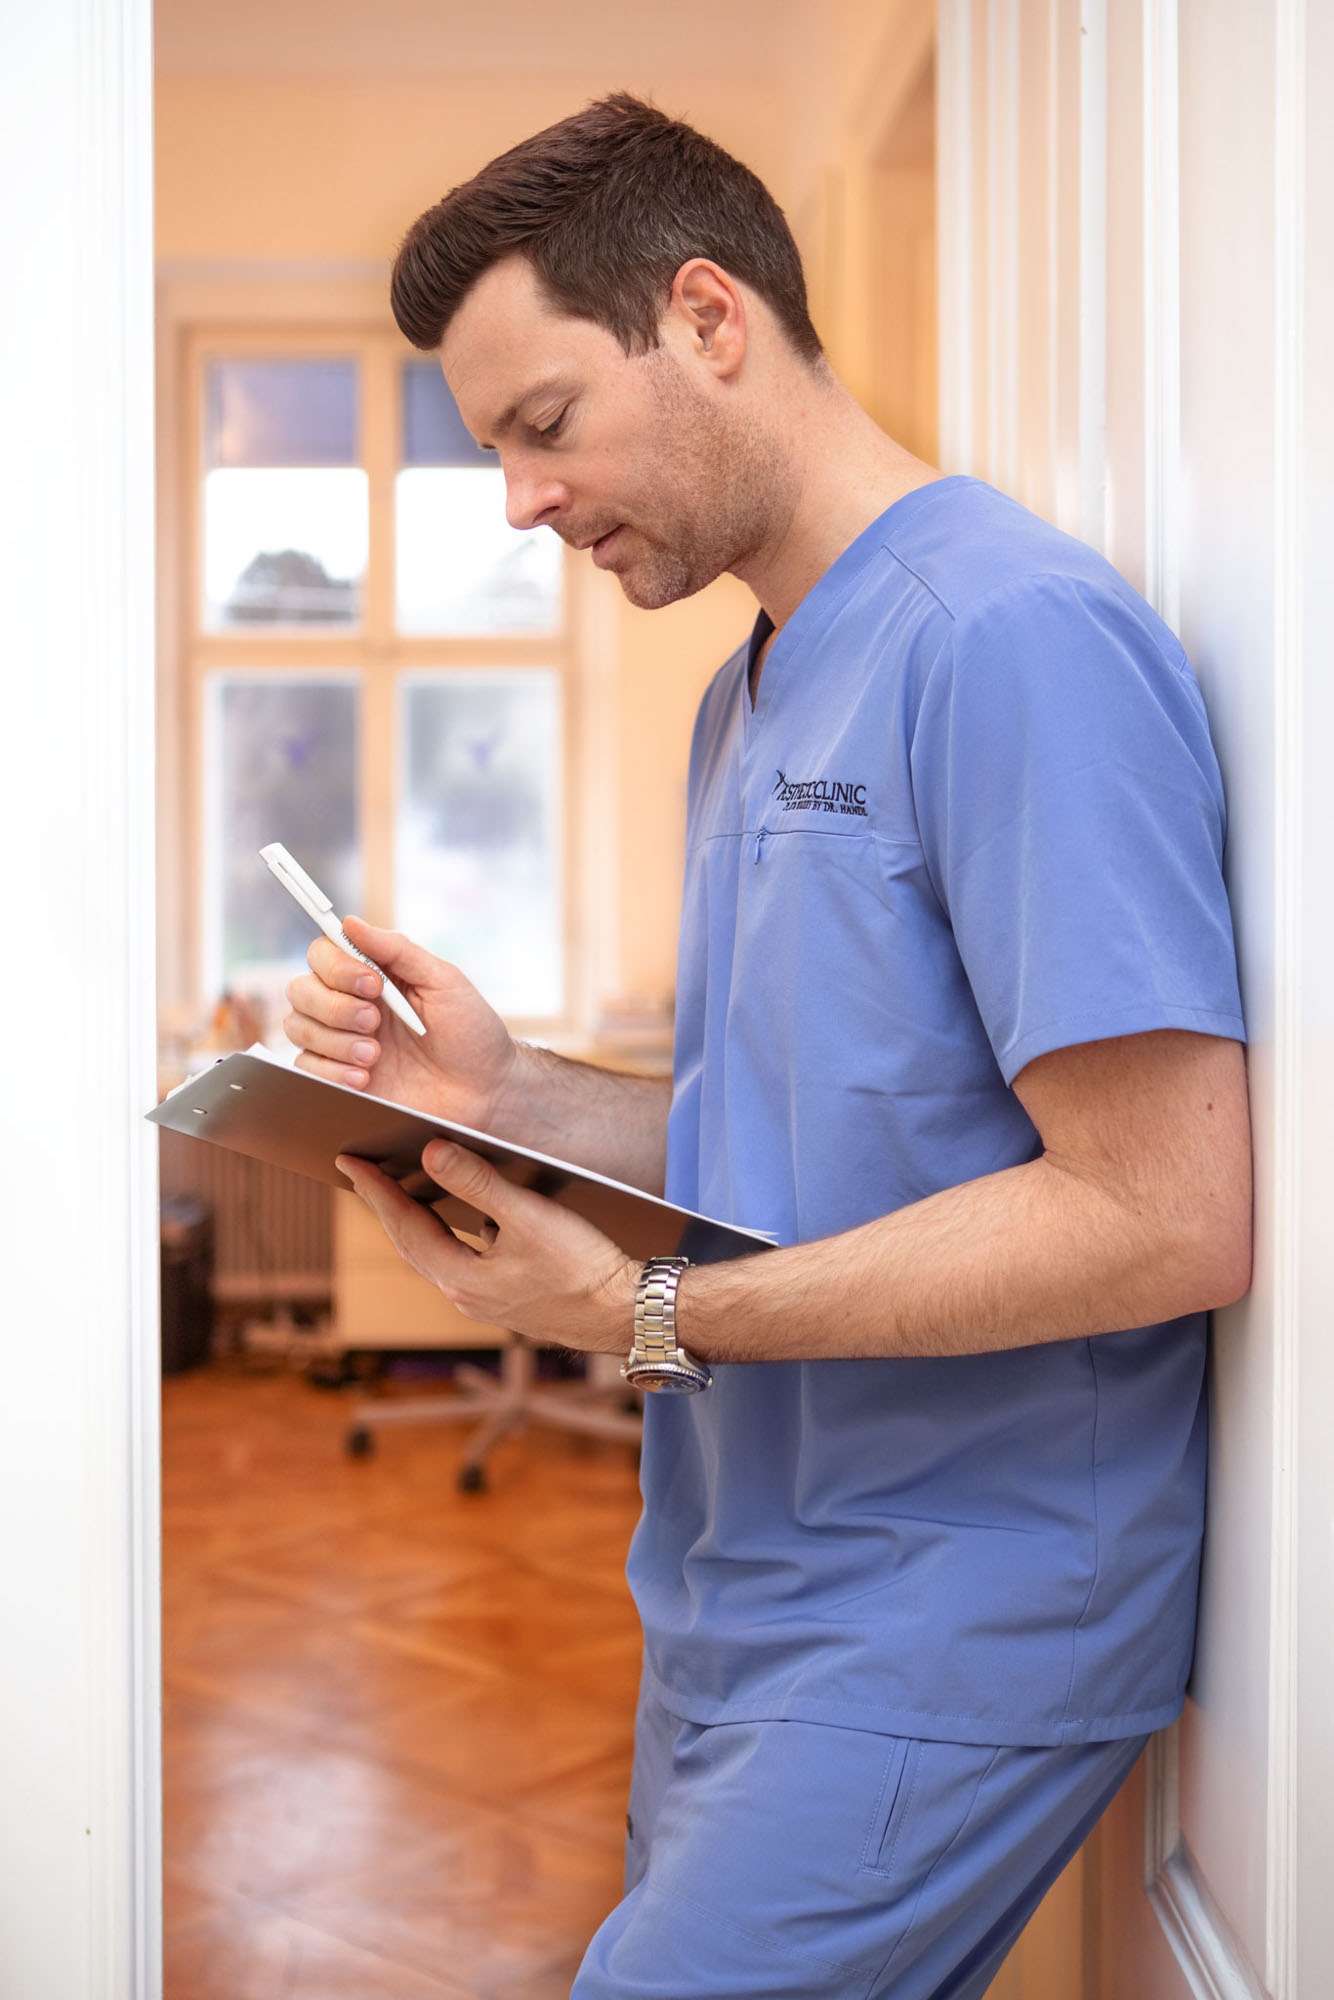 Ein Arzt im Arztkittel schreibt auf einem Klemmbrett in einem Flur mit Holzboden und einem Fenster